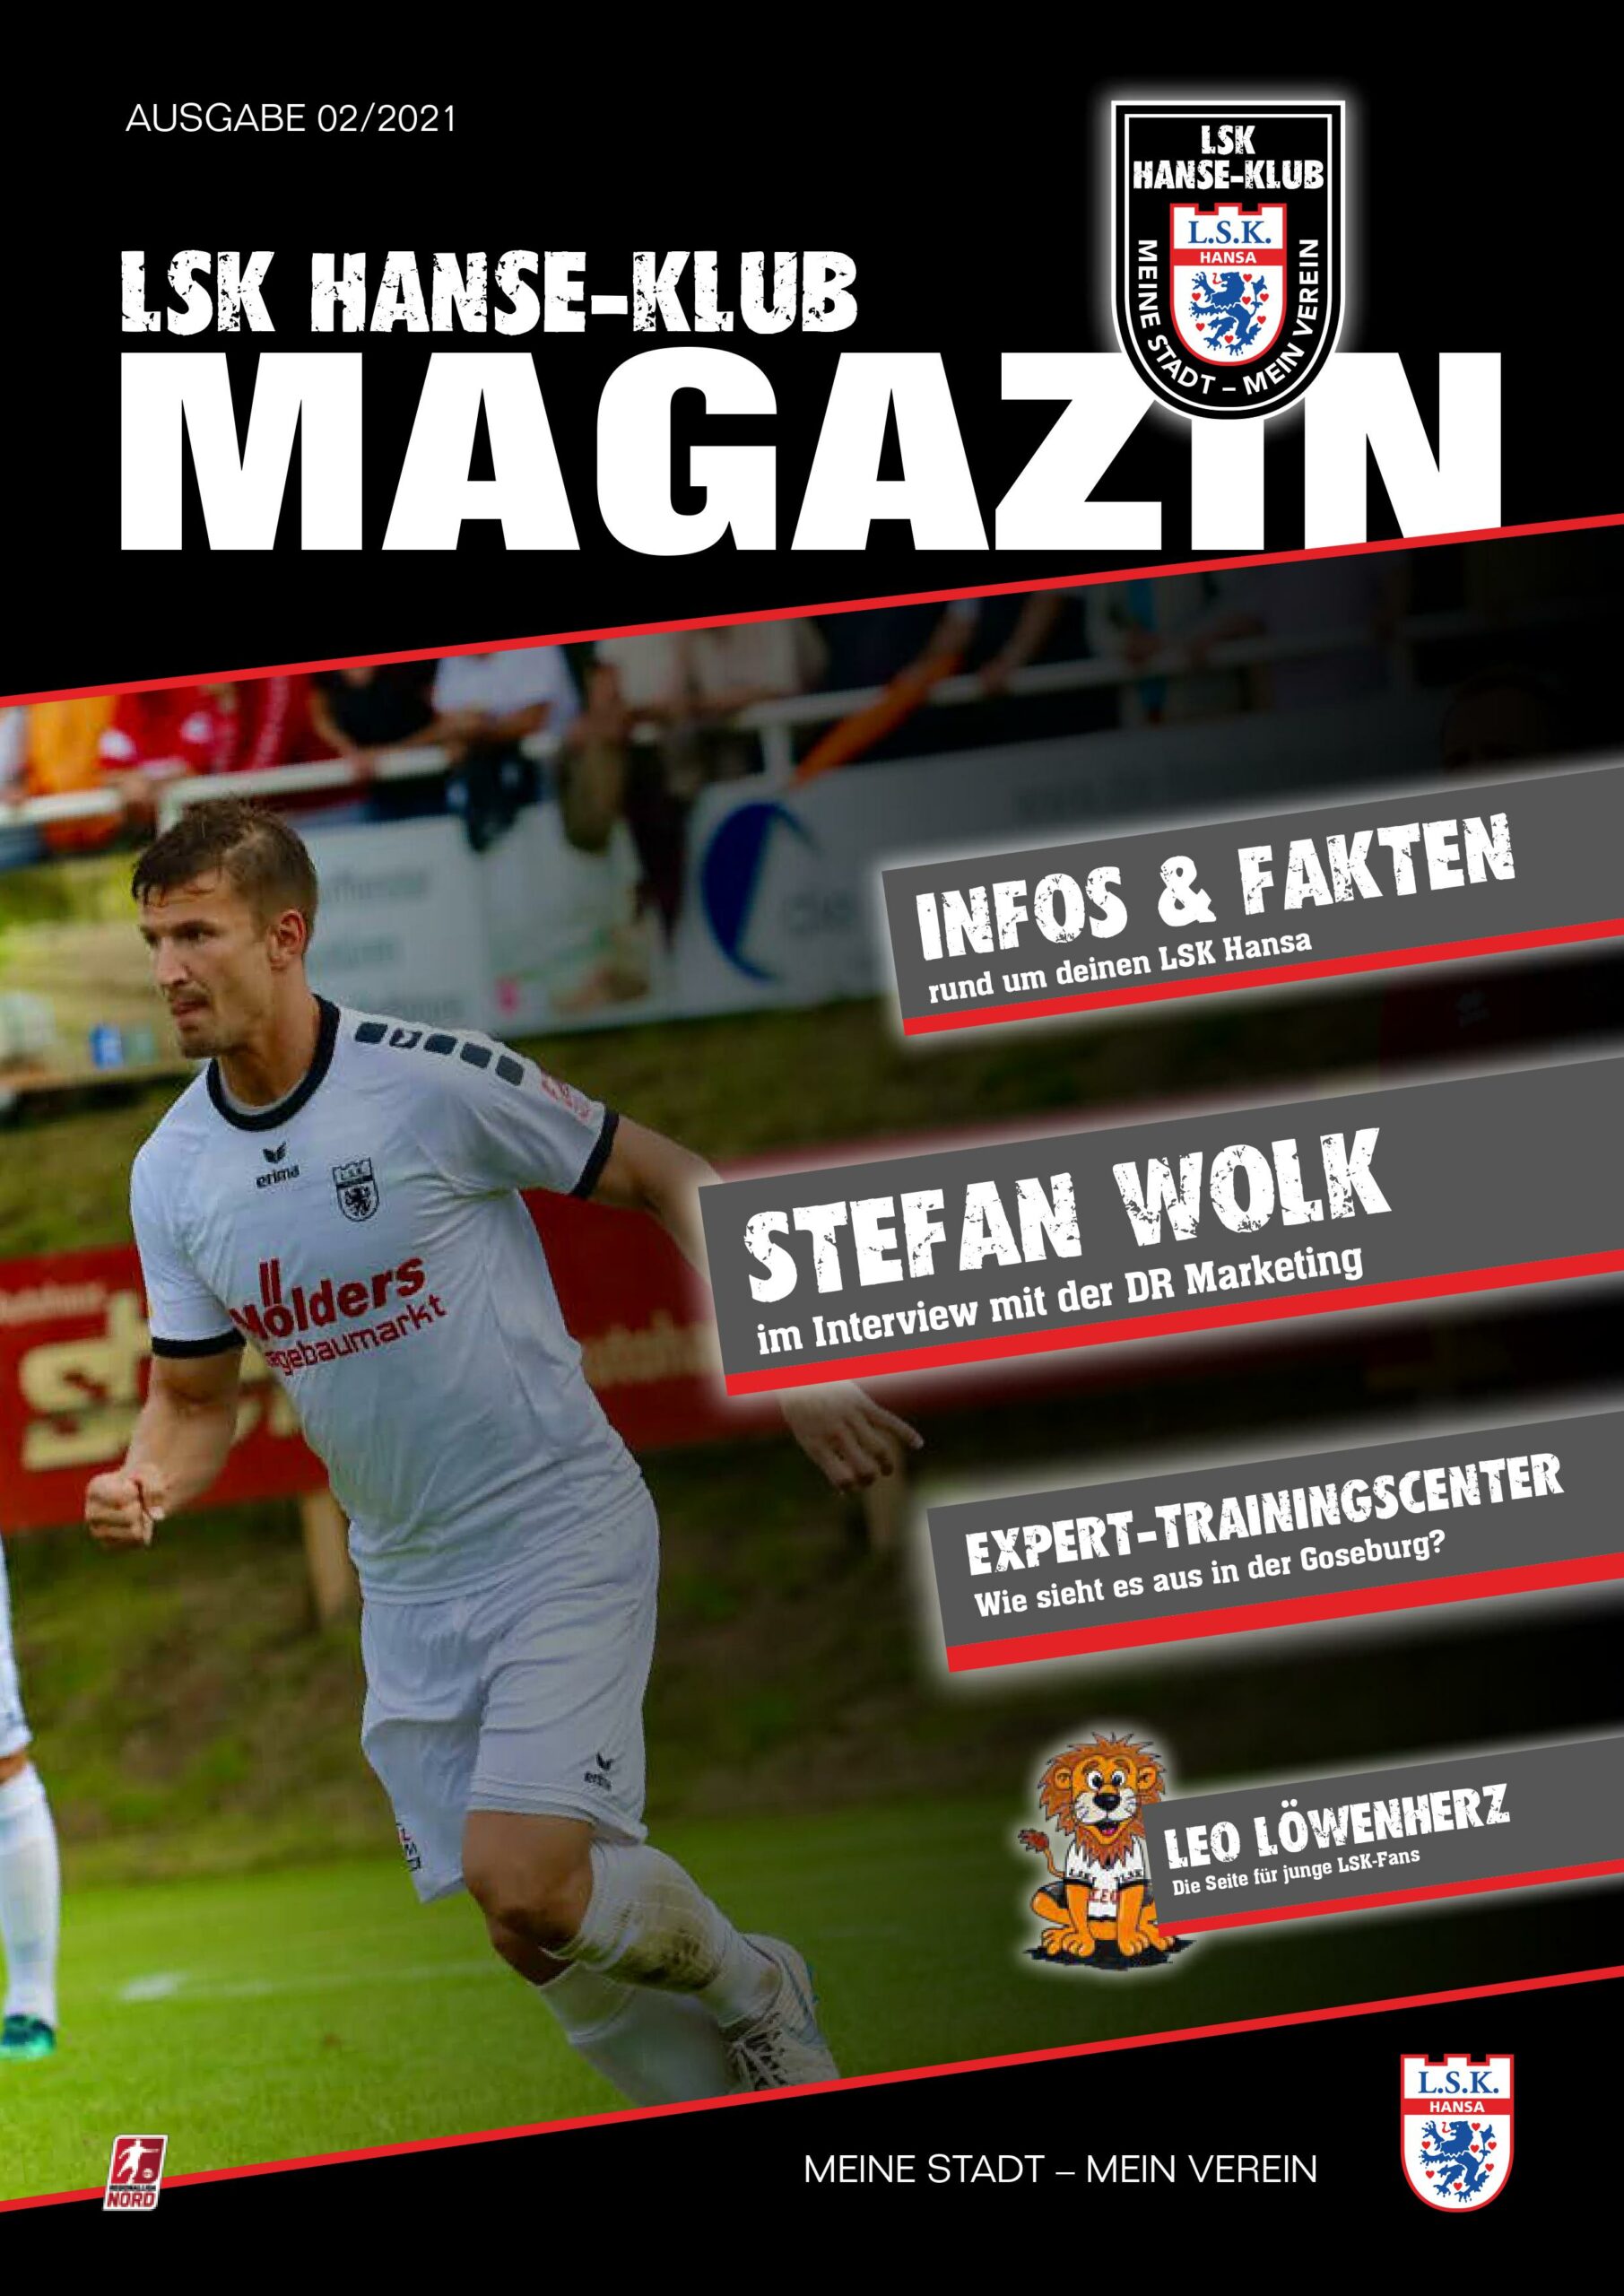 Read more about the article Im neuen LSK-Hanse-Klub-Magazin: Eine Woche in der LSK-Fußballschule gewinnen